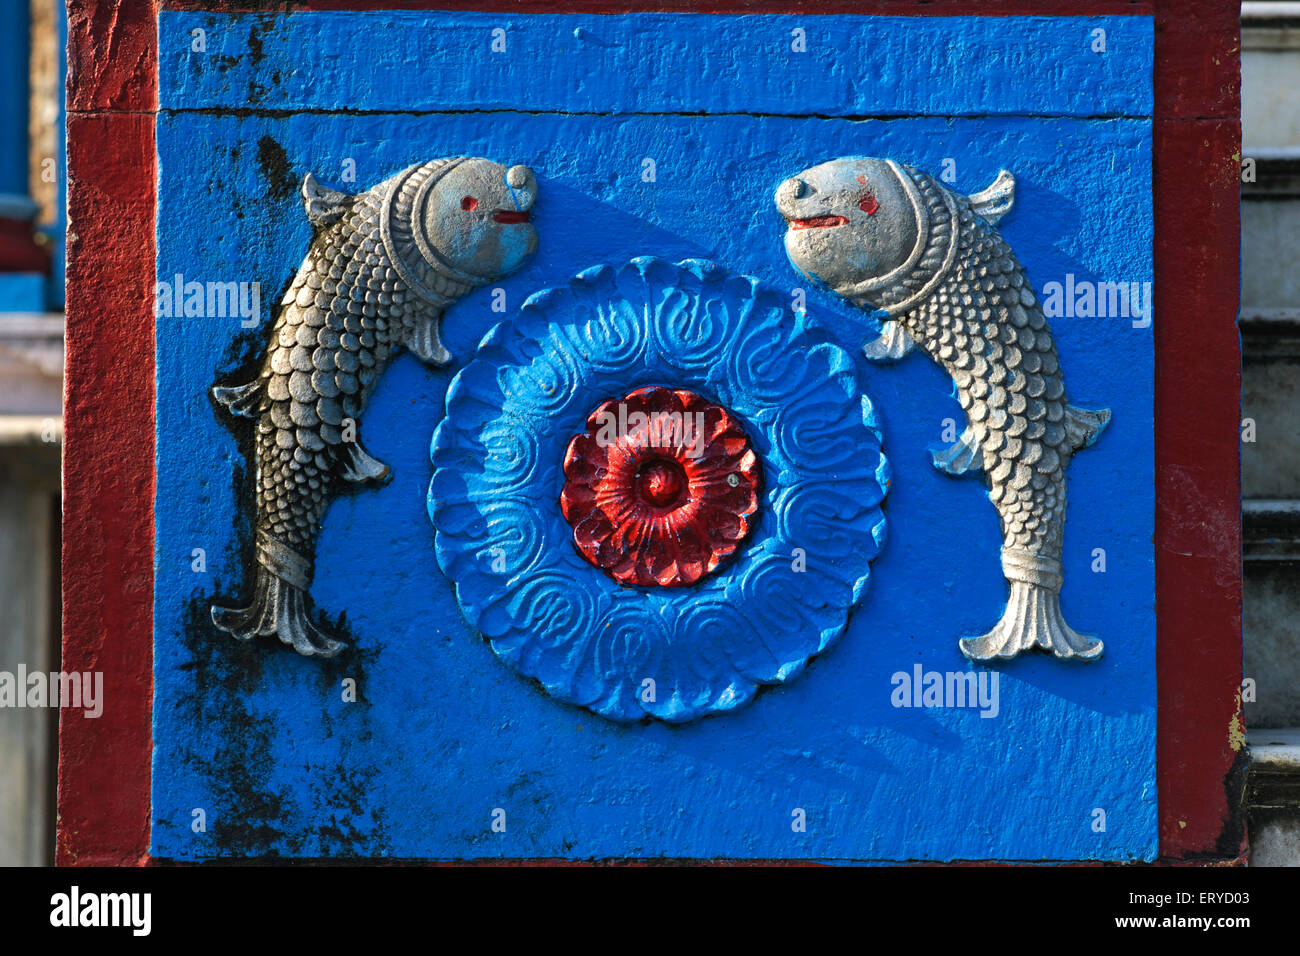 Fische Astrologisches Zeichen, zwei Fische, Shree Swaminarayan Mandir Tempel; Chhapia, Chhapaiya, Ayodhya; Faizabad; Uttar Pradesh; Indien, Asien Stockfoto